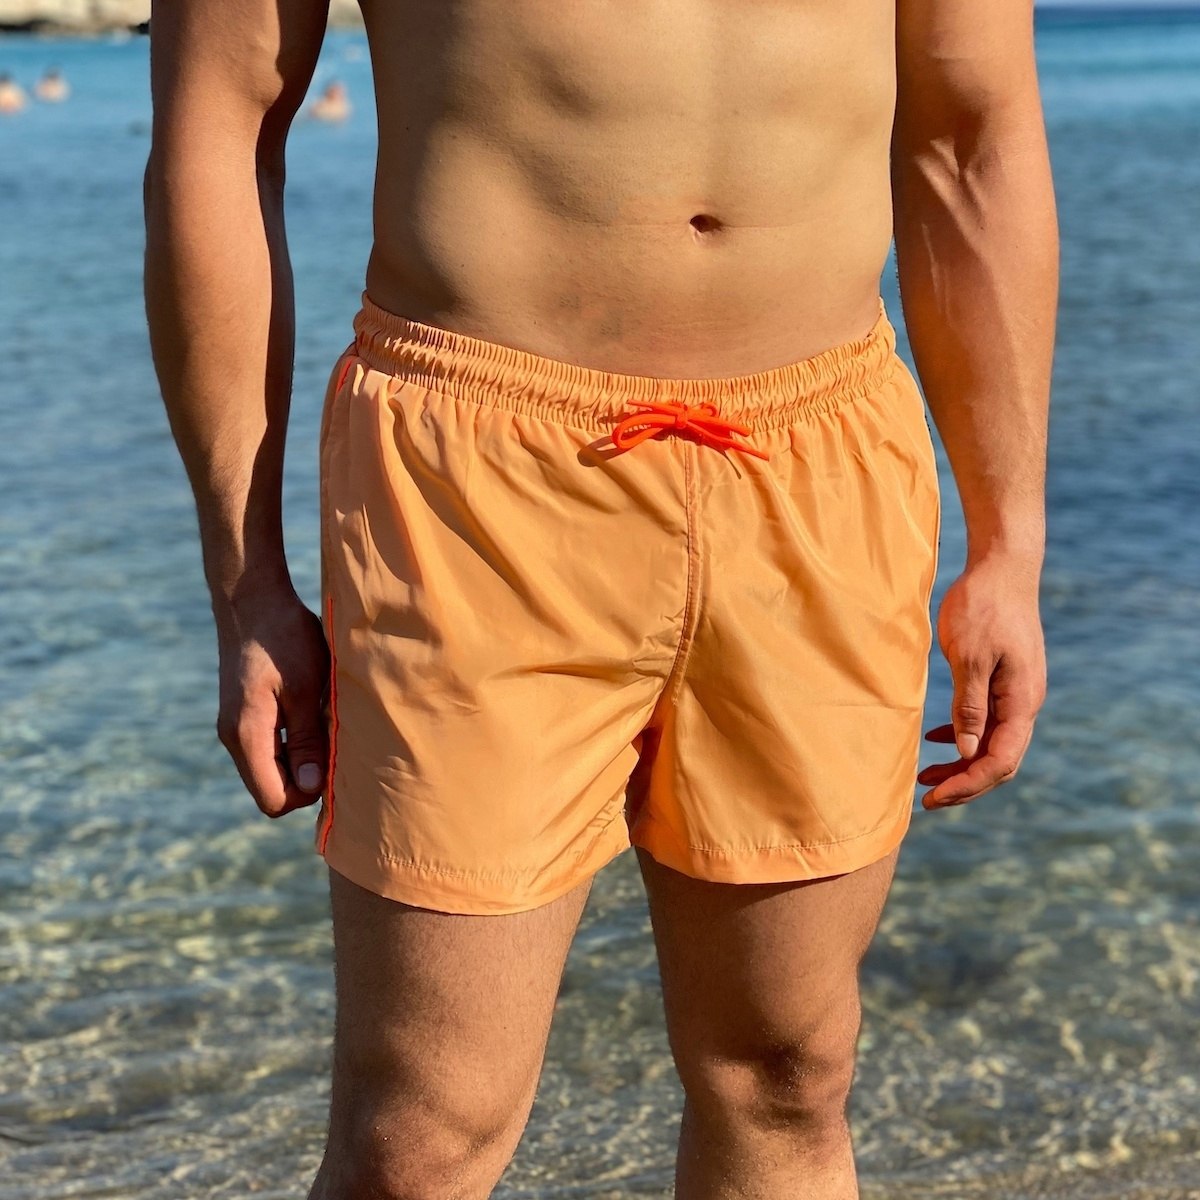 Men's Swimming Short In Light Orange - 2